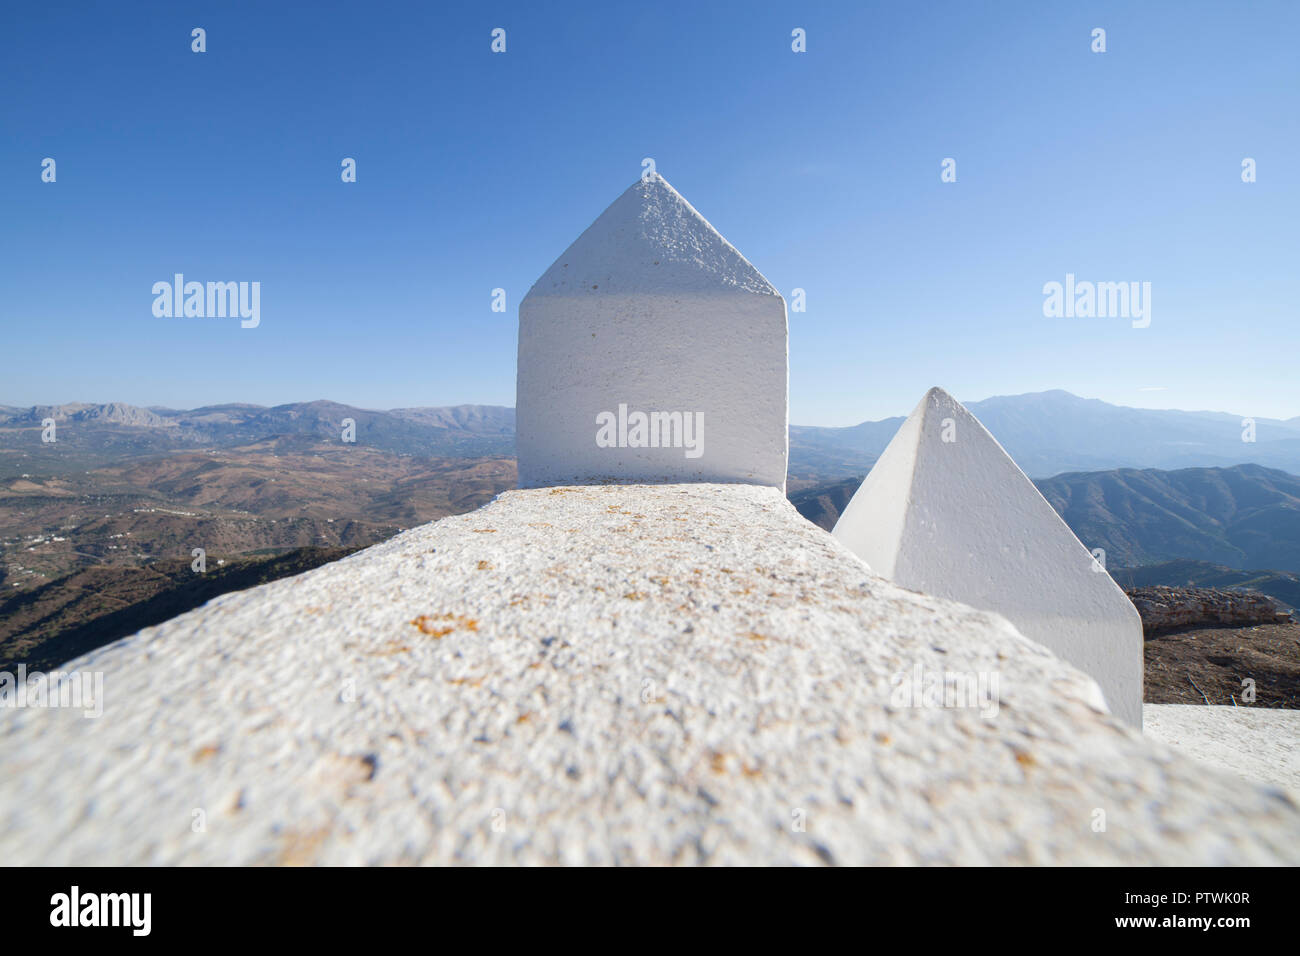 Comares Stadtbild. Weißes Dorf auf einem Hügel, Berge von Malaga, Andalusien, Spanien. Panoramaaussicht Stockfoto